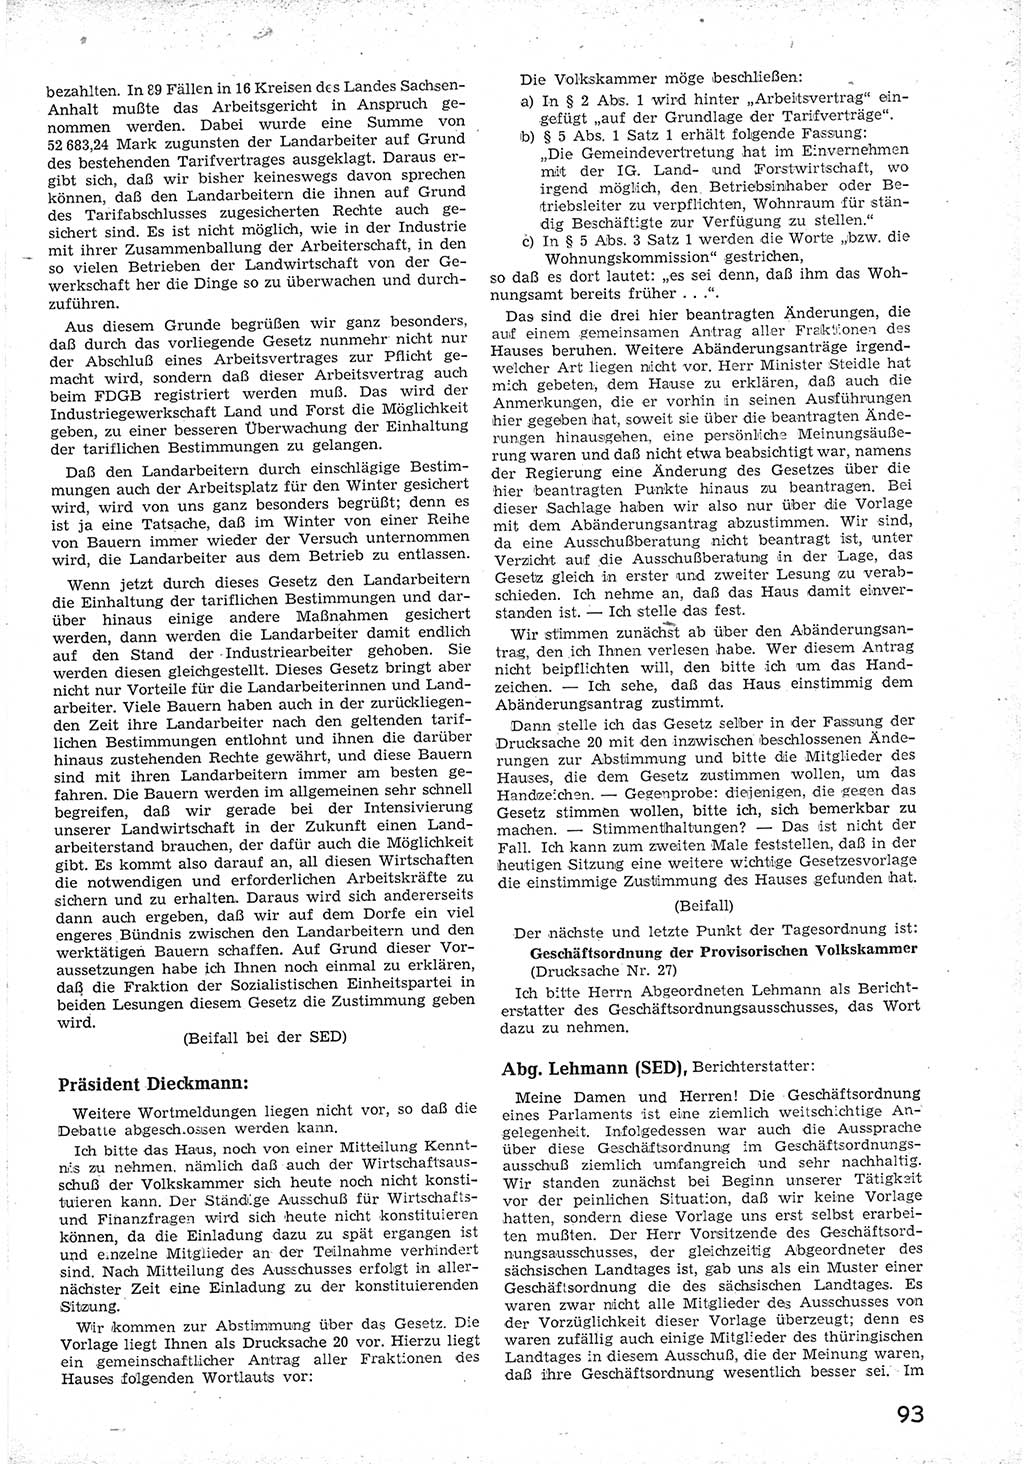 Provisorische Volkskammer (VK) der Deutschen Demokratischen Republik (DDR) 1949-1950, Dokument 105 (Prov. VK DDR 1949-1950, Dok. 105)